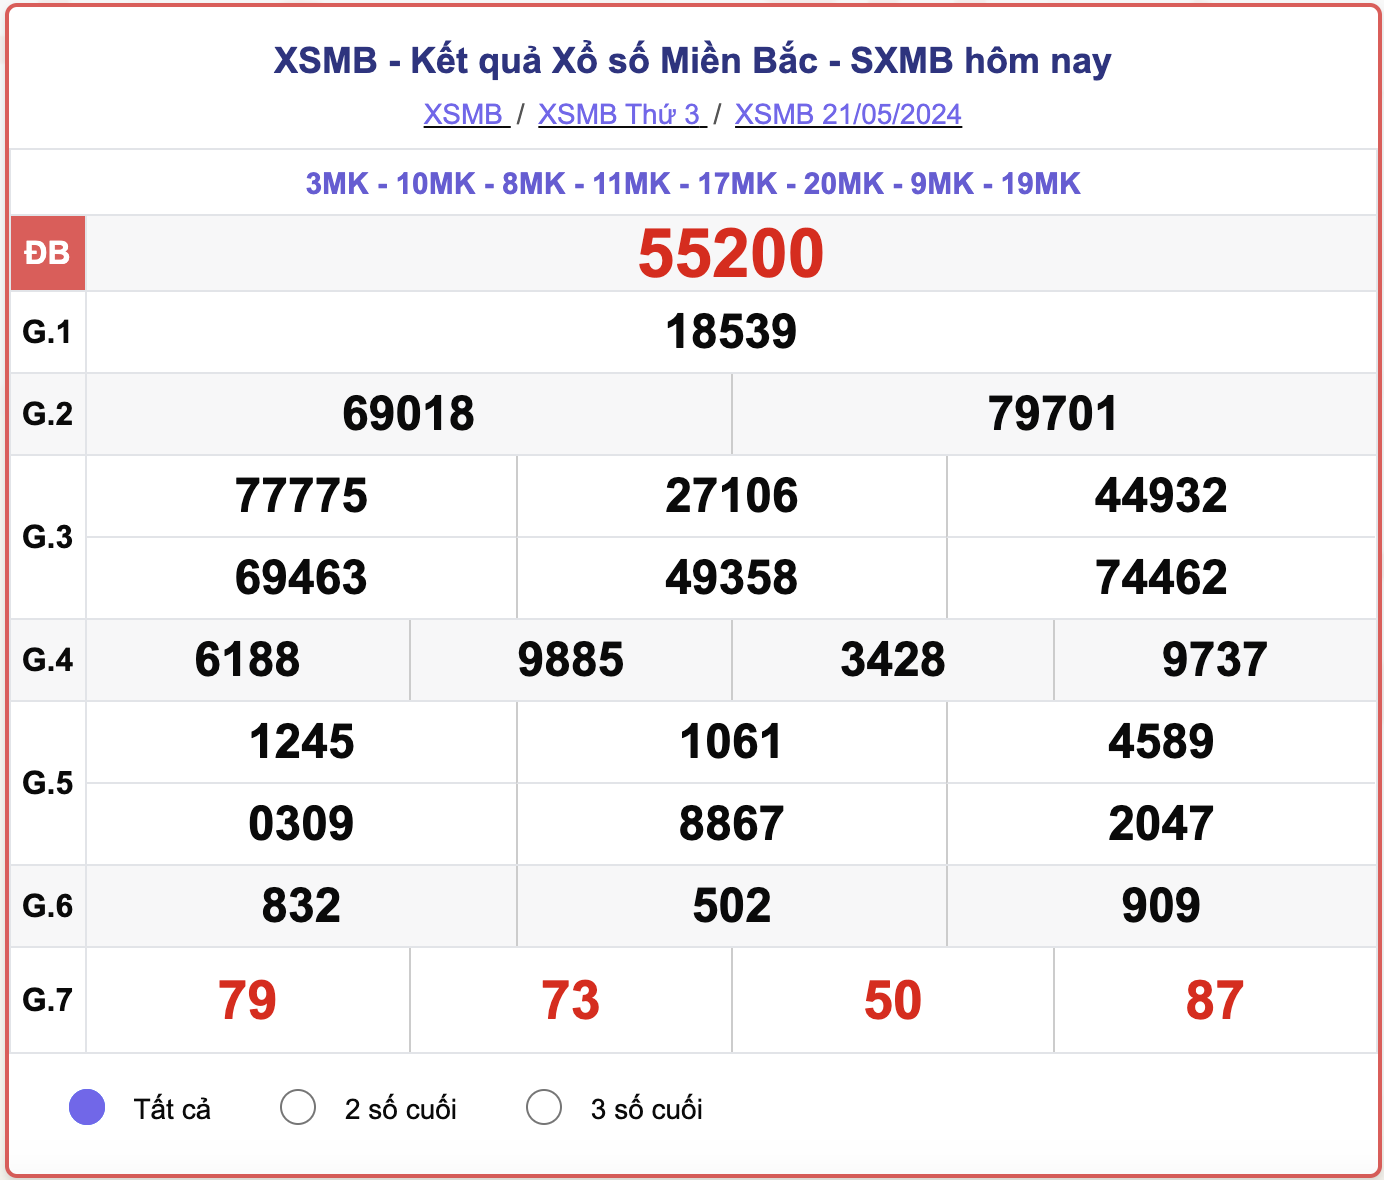 XSMB 23/5 - Kết quả xổ số miền Bắc hôm nay 23/5/2024 - KQXSMB ngày 23/5- Ảnh 3.